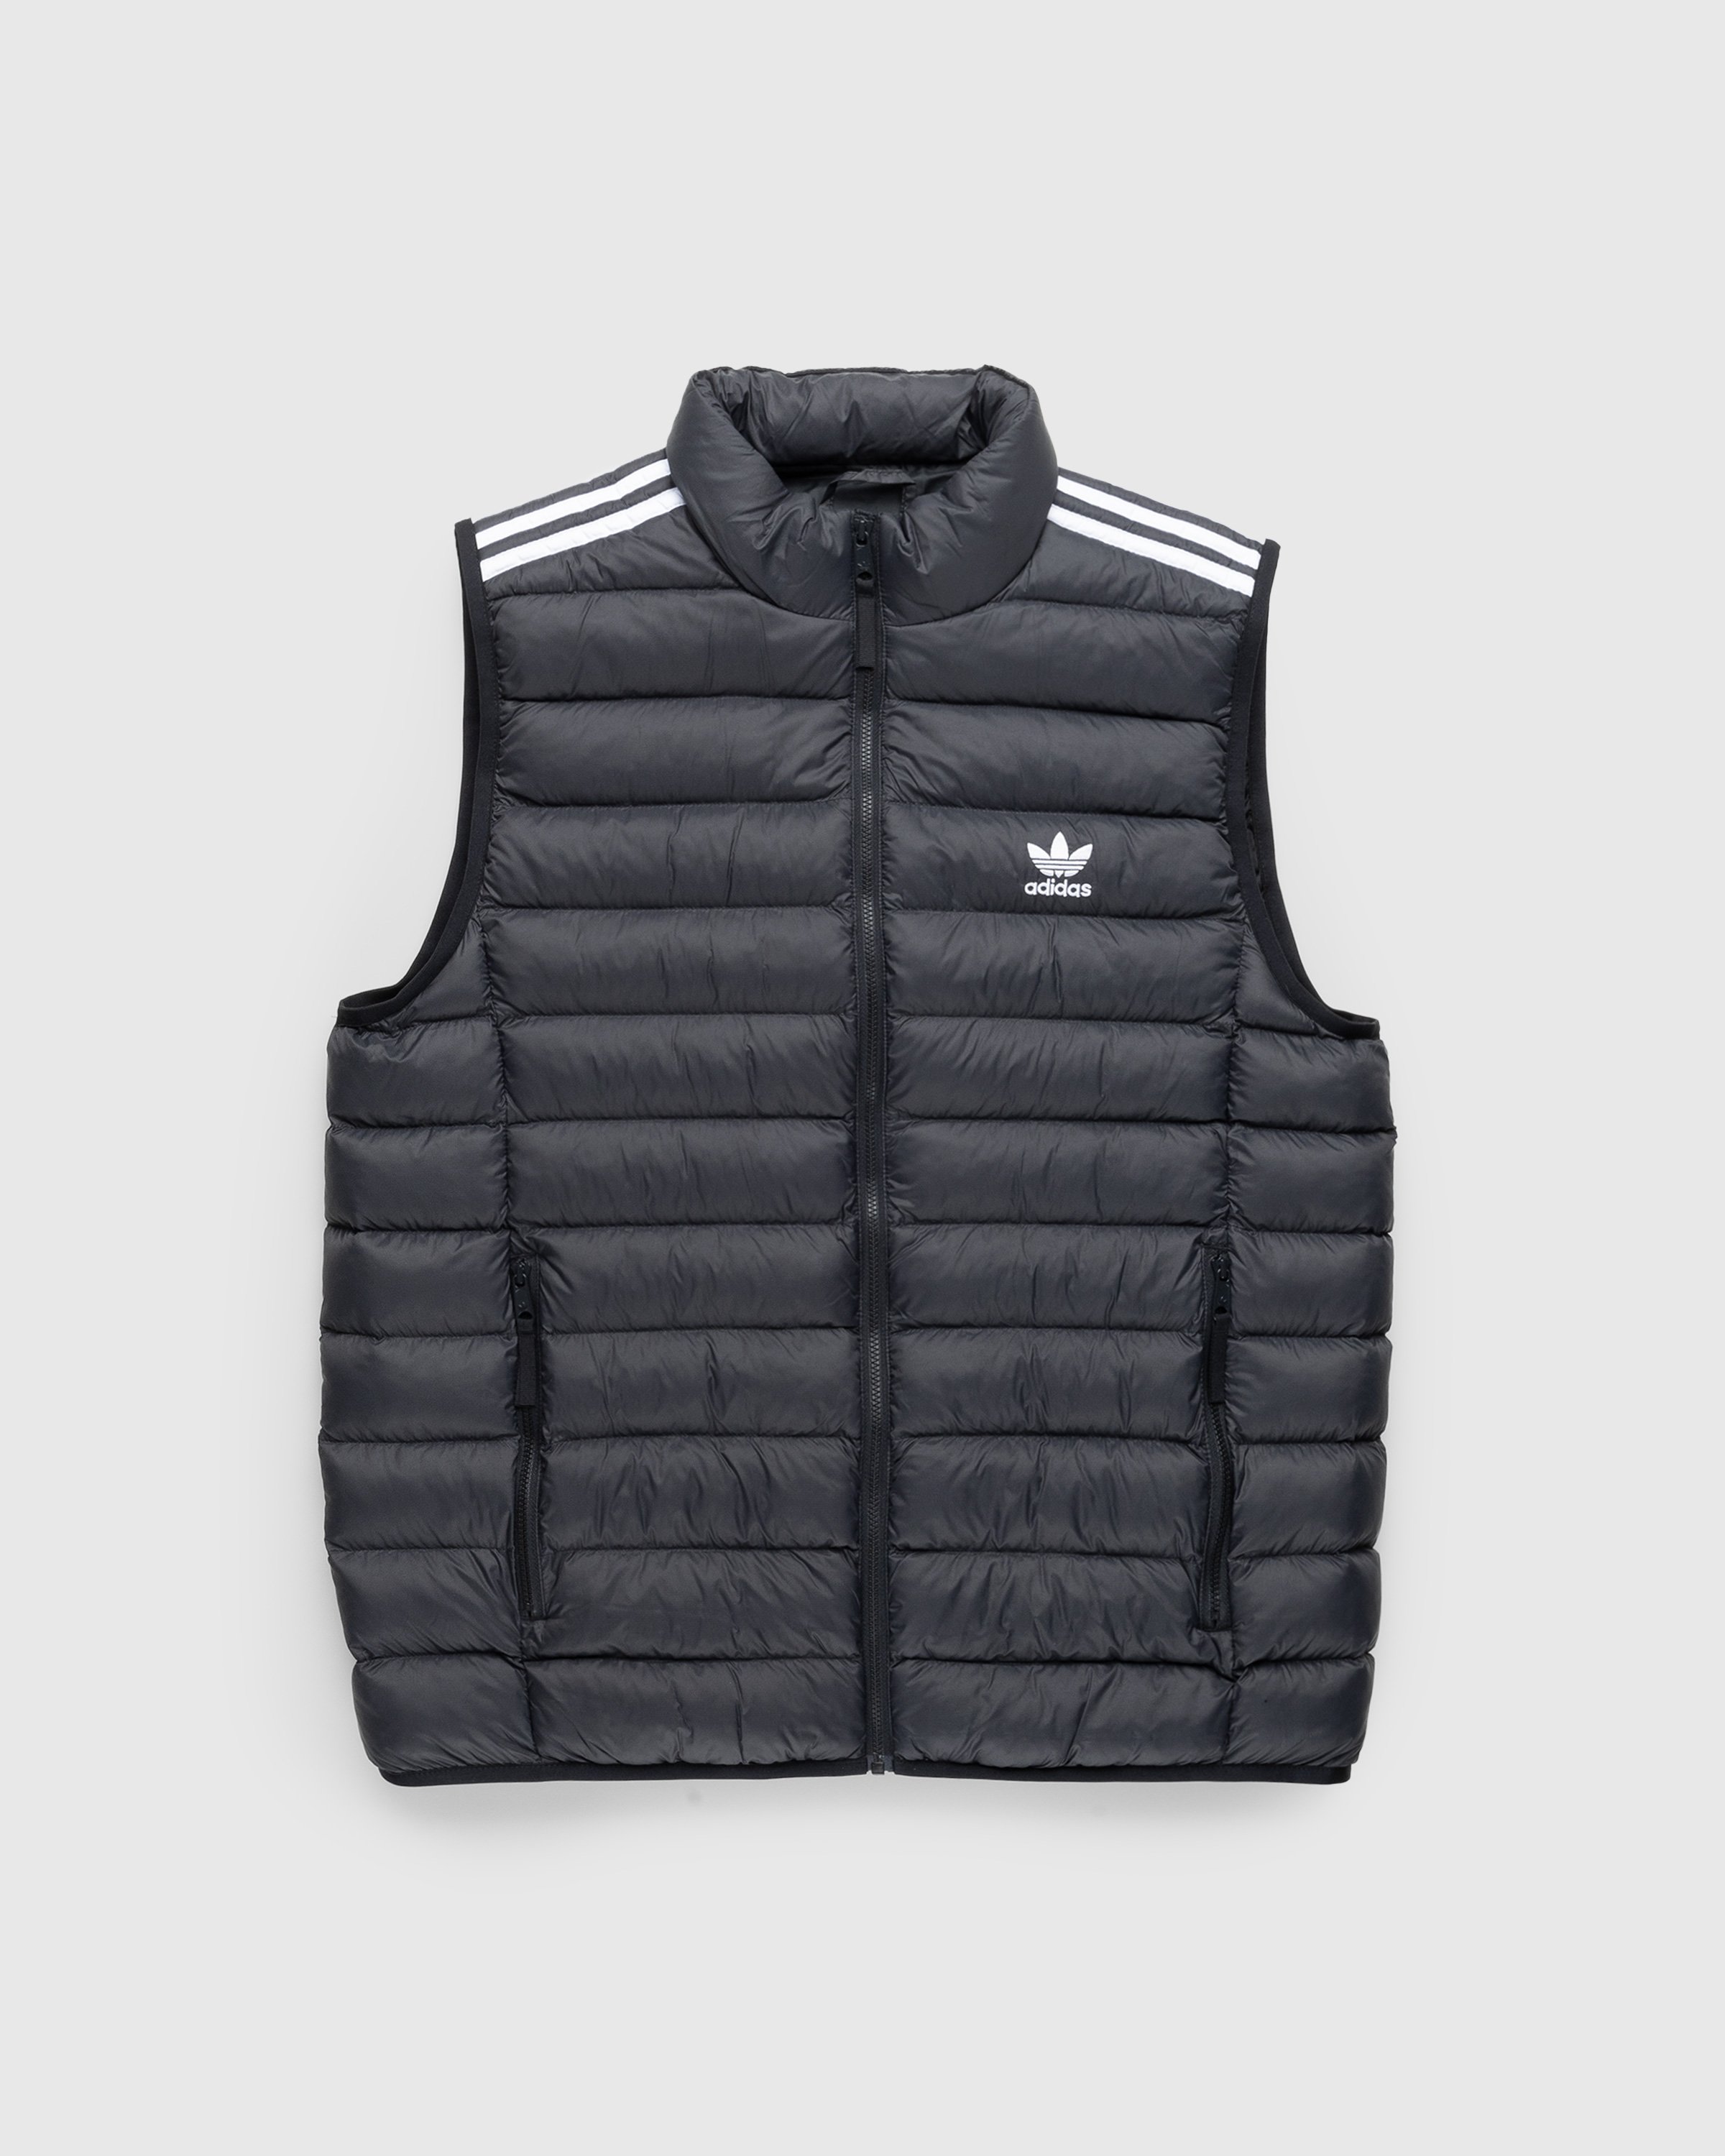 Adidas – Padded Vest Black/White | Highsnobiety Shop | 